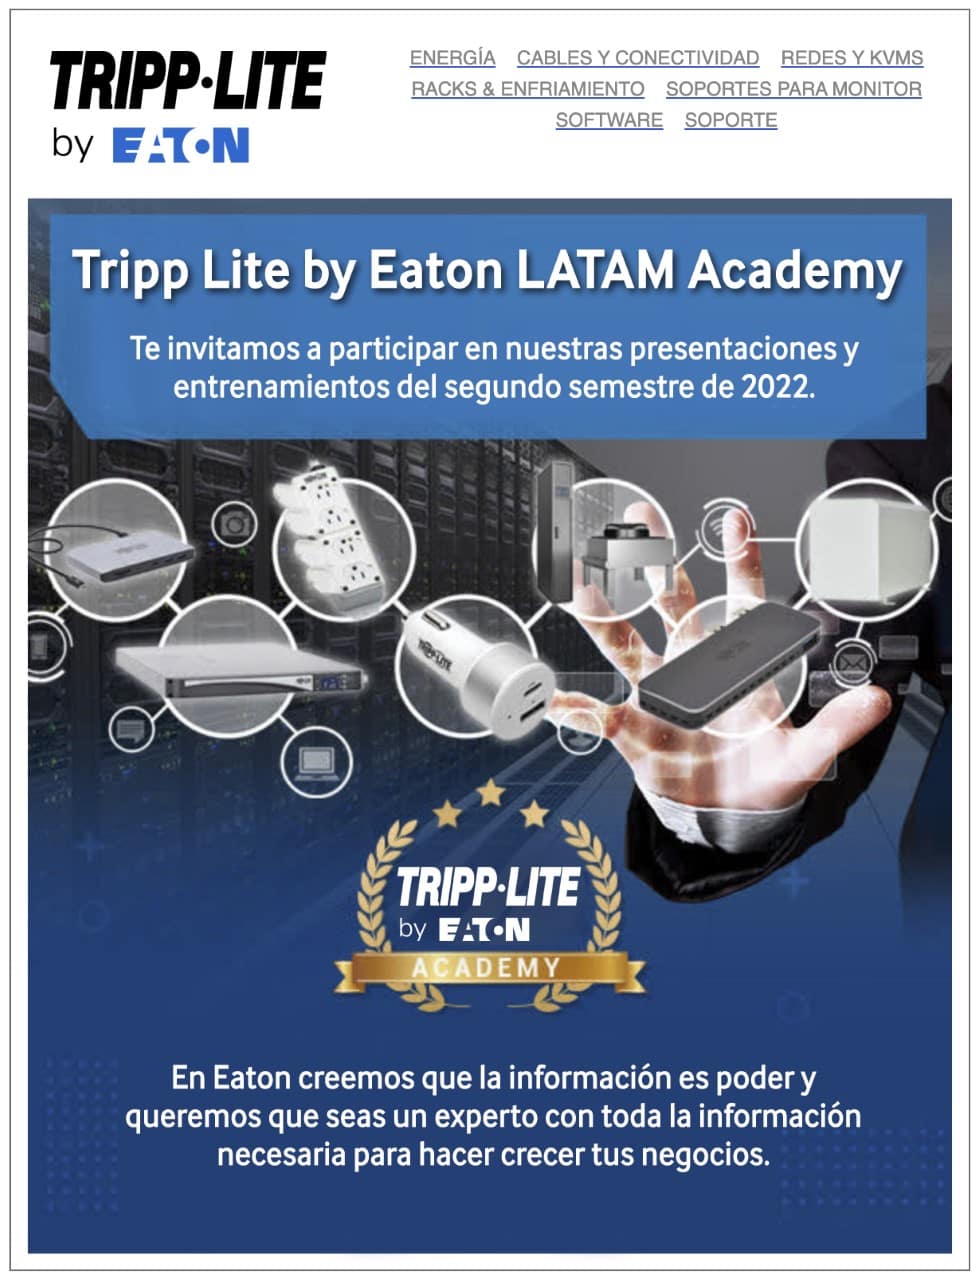 Tripp Lite by EATON ya tiene fechas de entrenamientos para el canal